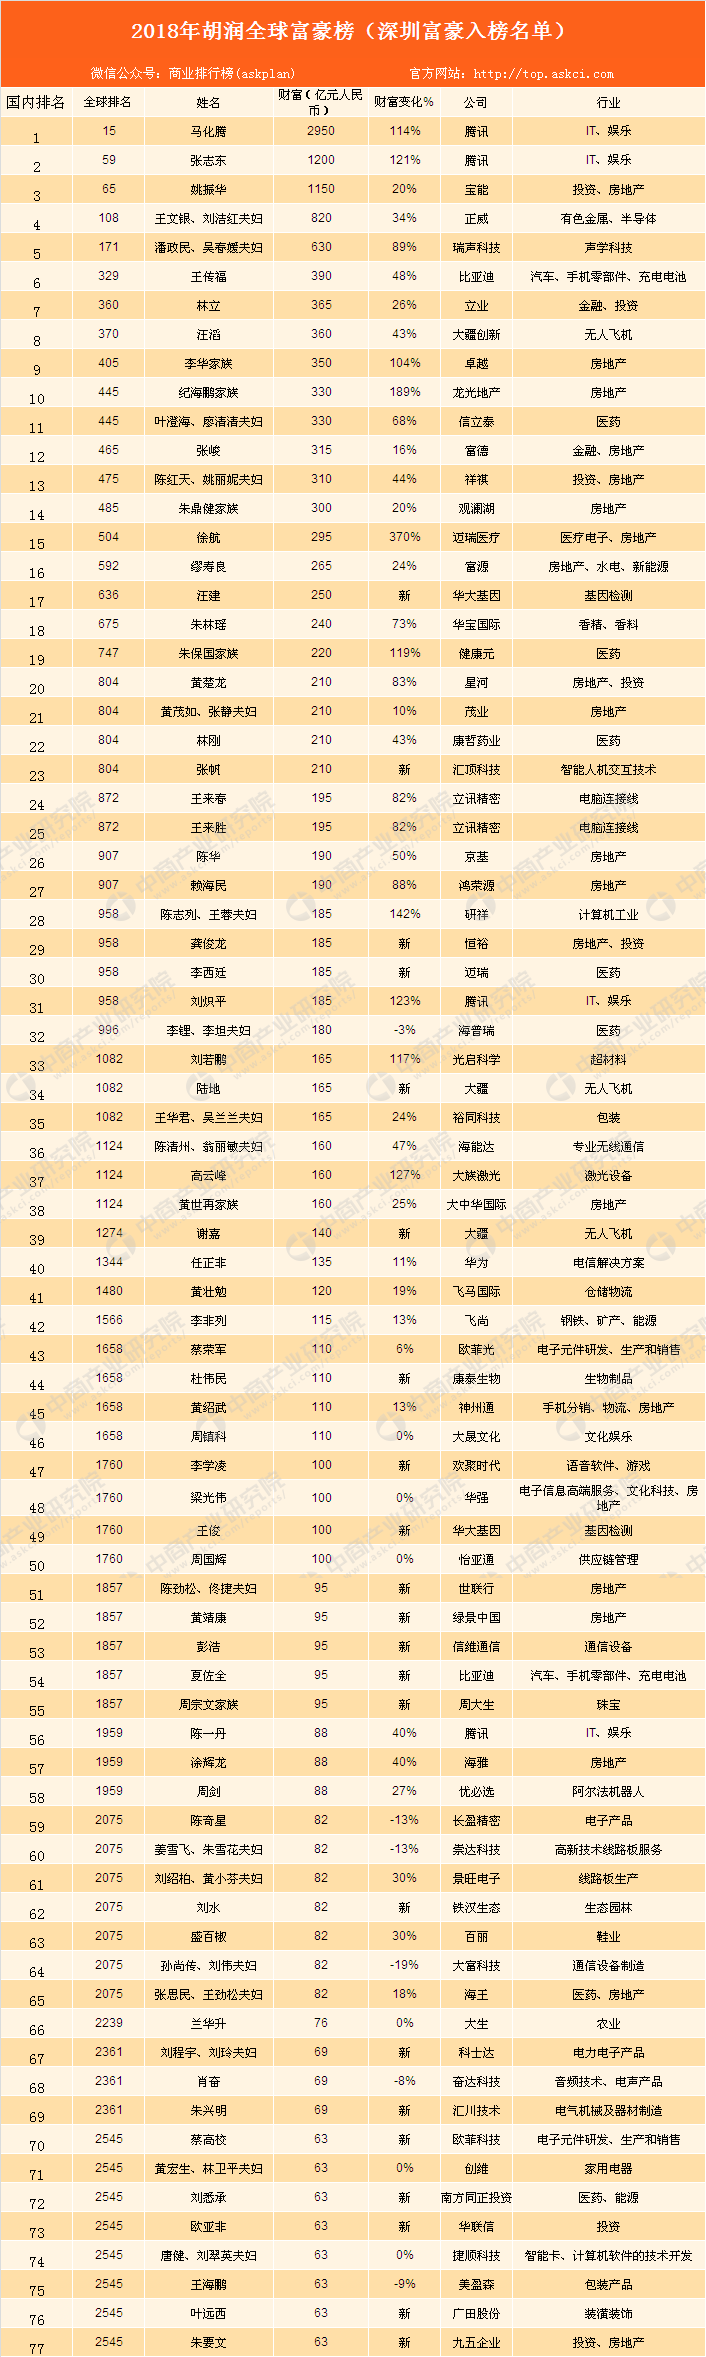 全球富豪深圳有77位 全国城市第二